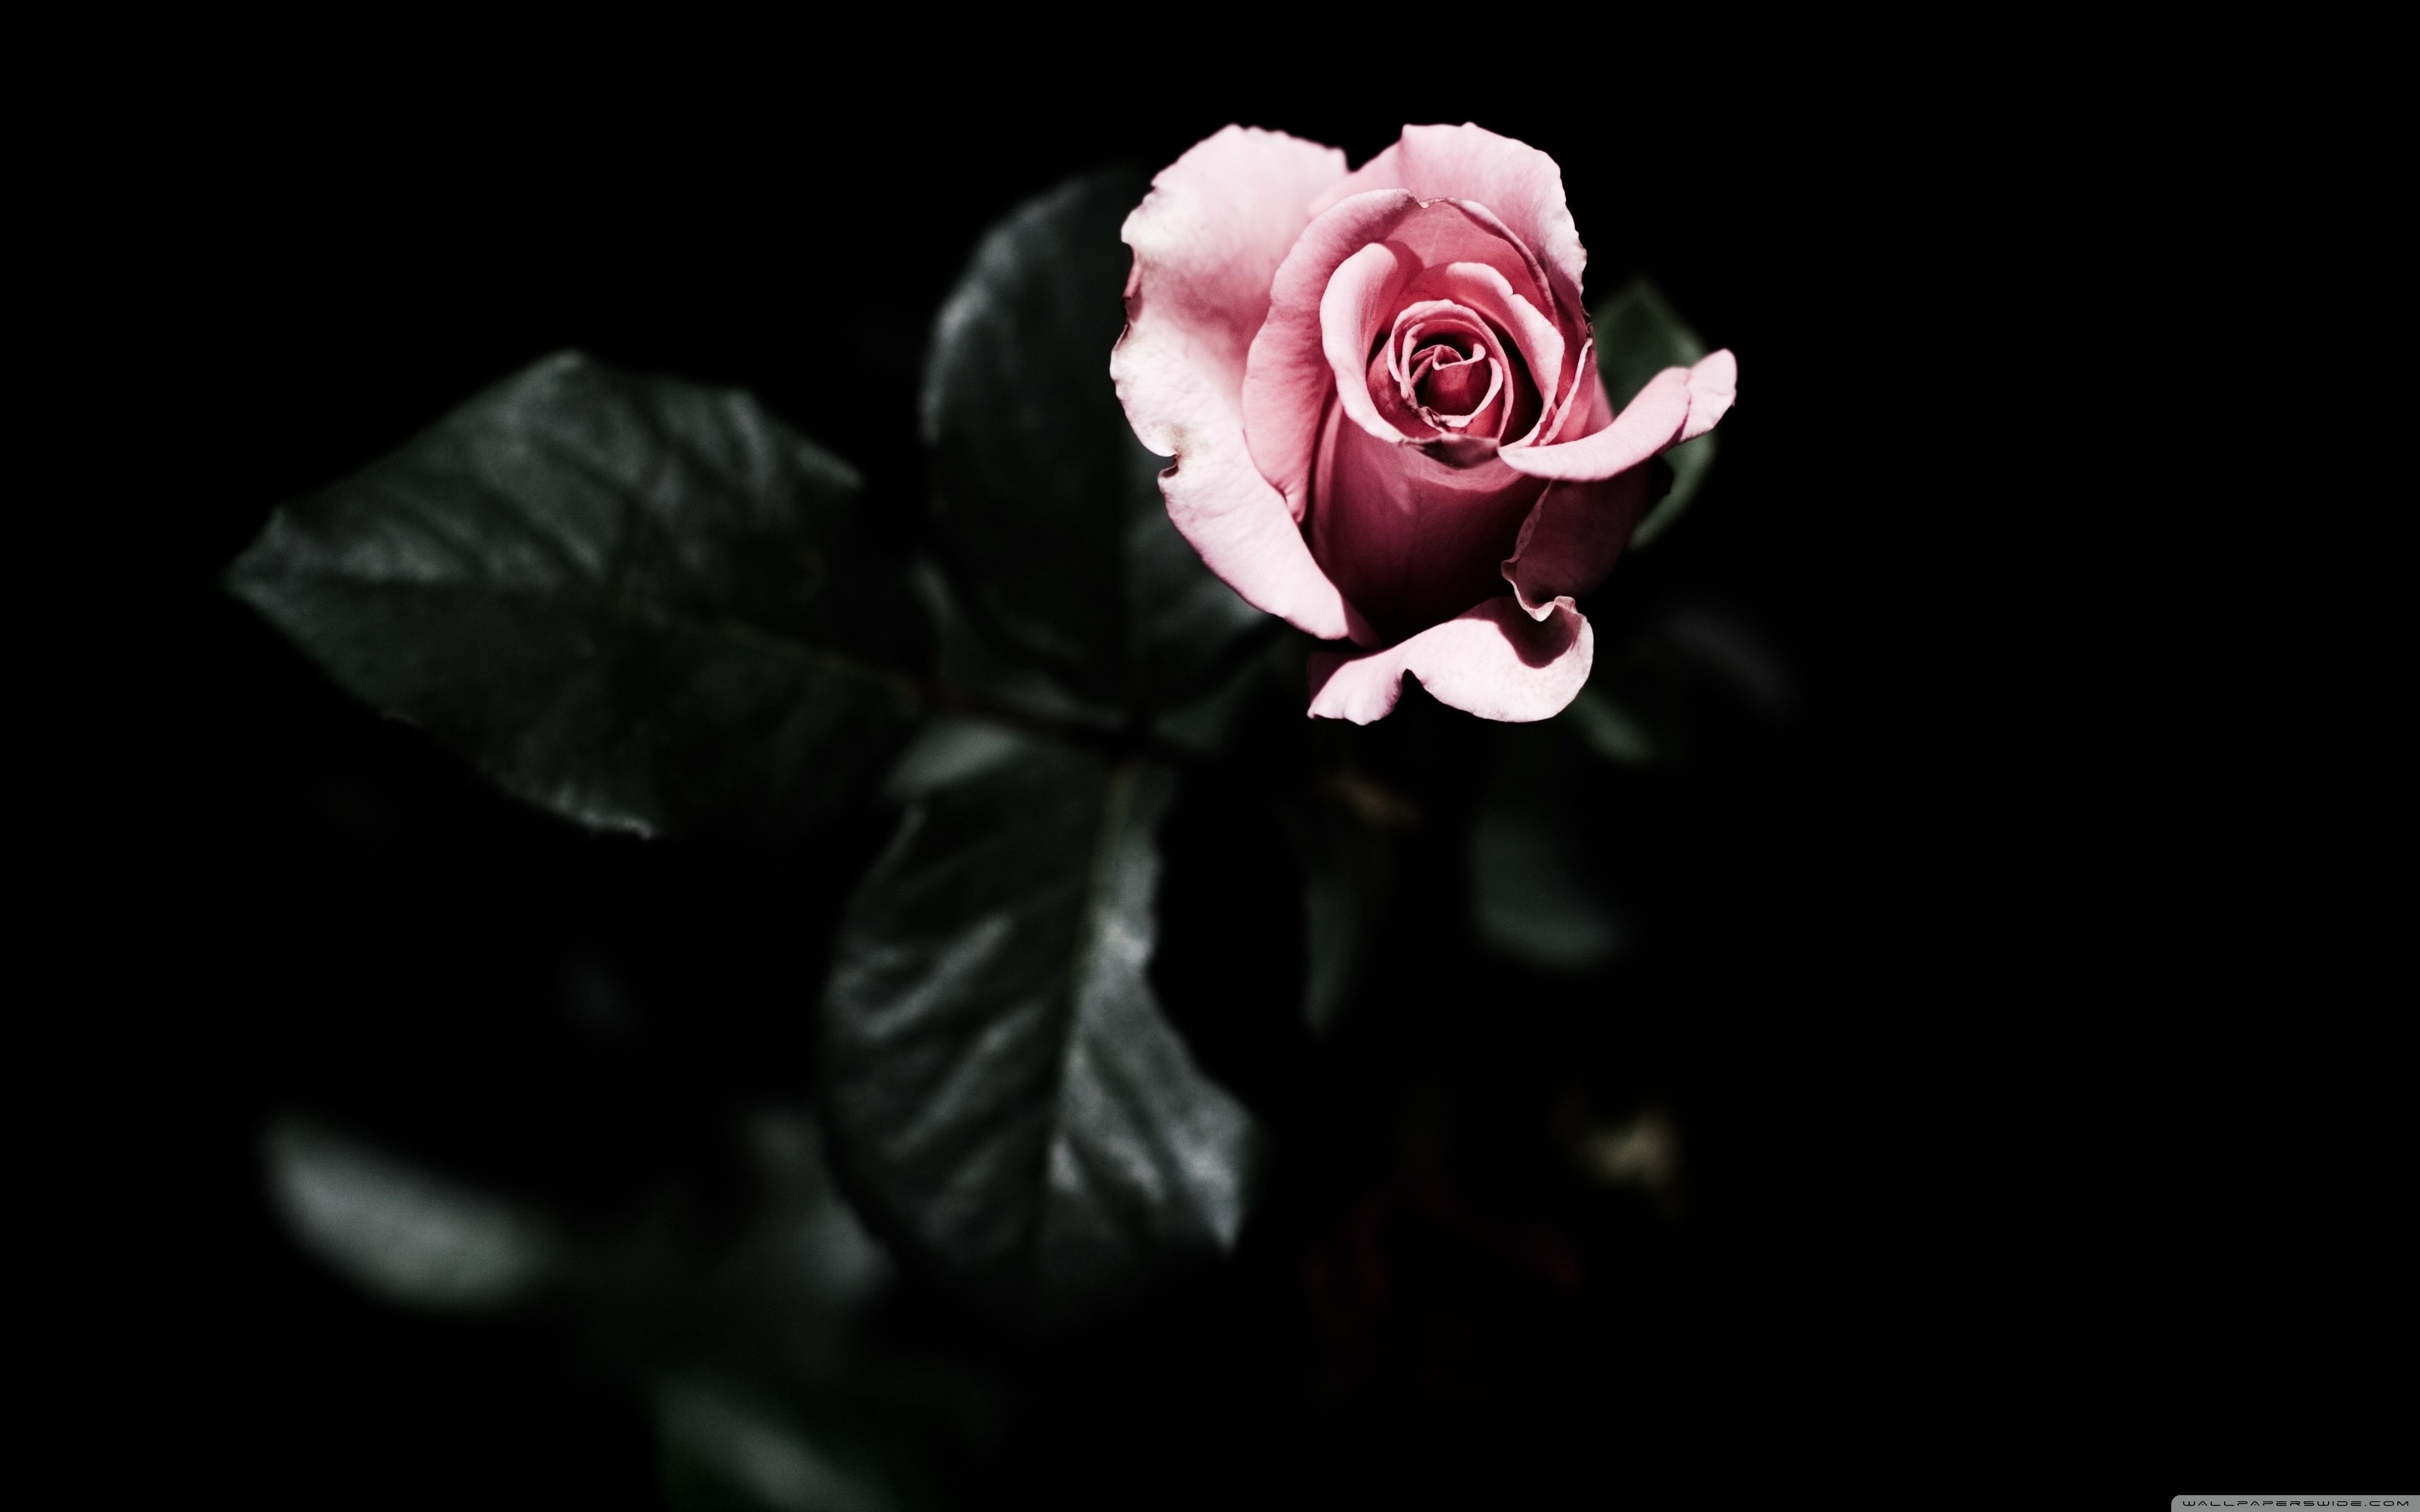 Hình nền hồng đen hoa hồng trên nền đen đang chờ đón bạn khám phá! Với tông màu hồng đen thanh lịch kết hợp cùng hoa hồng tuyệt đẹp, bạn sẽ có một không gian màn hình độc đáo và sang trọng.